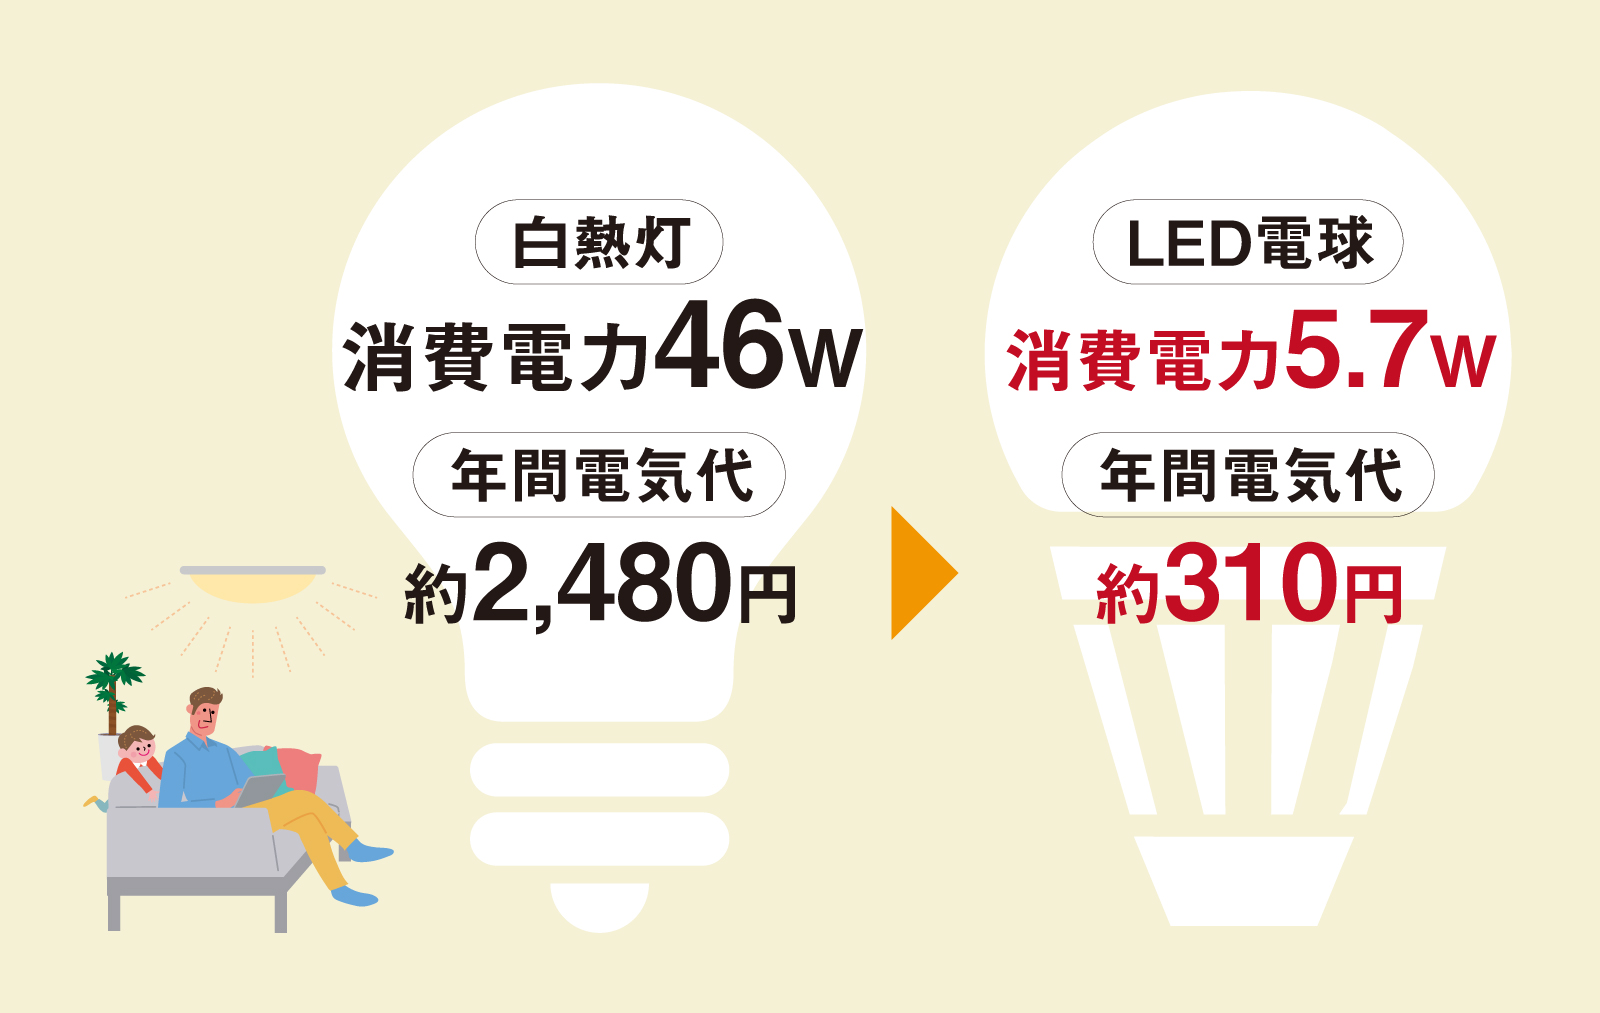 LED消費電力